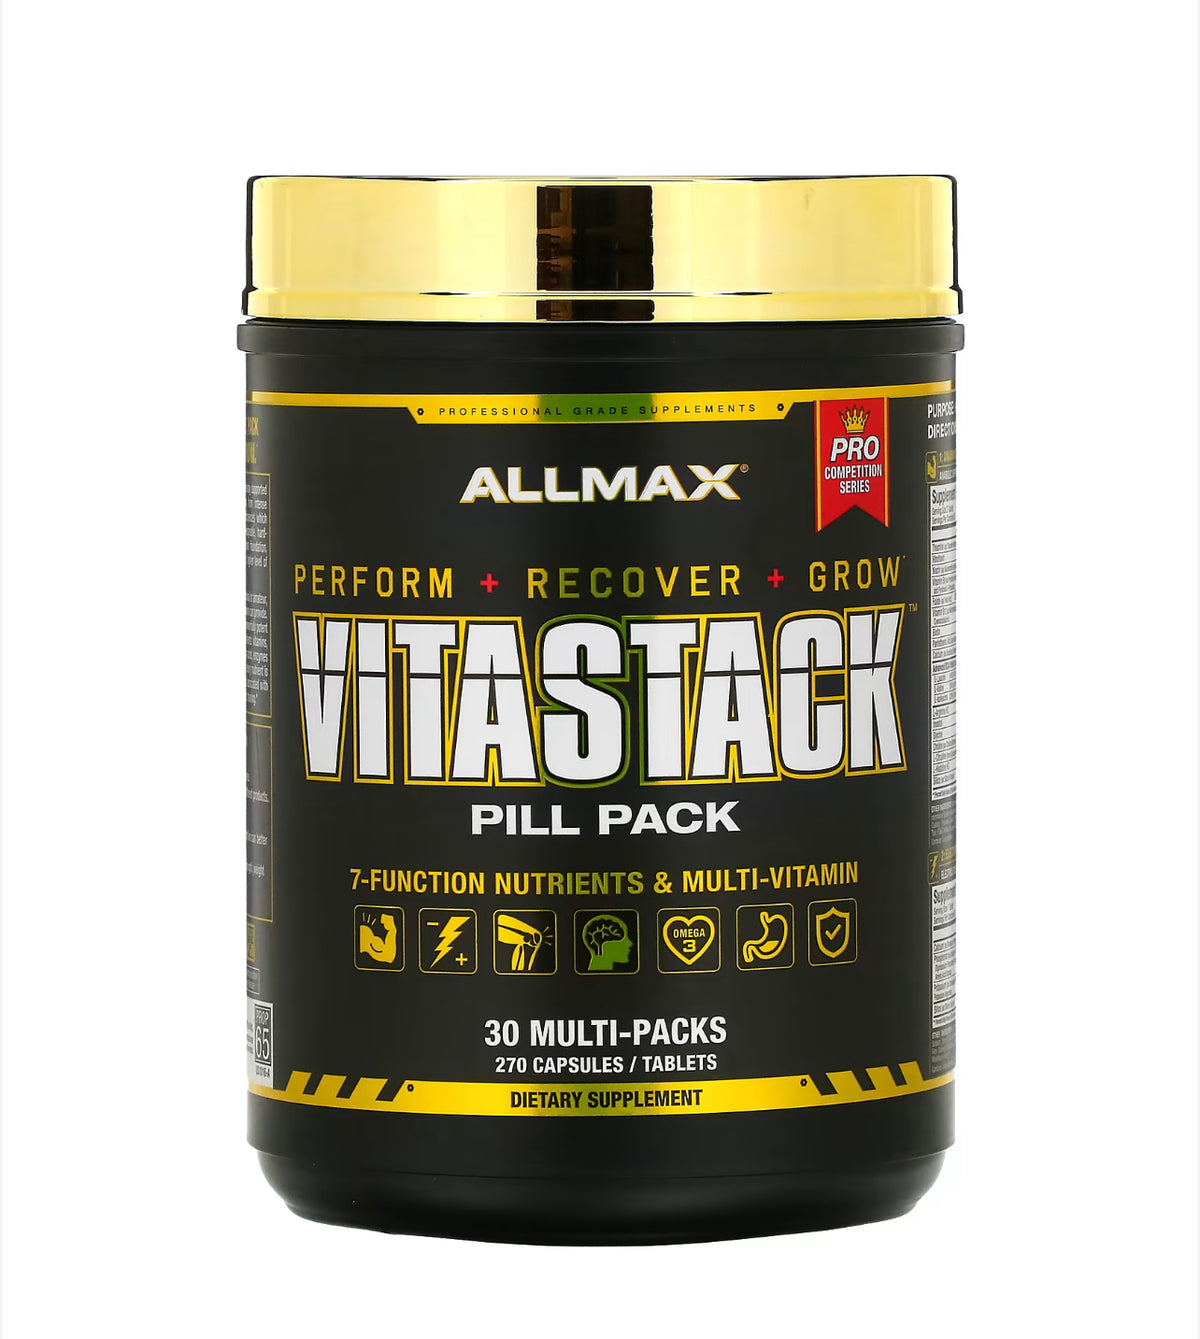 Allmax Nutrition - Vitastack